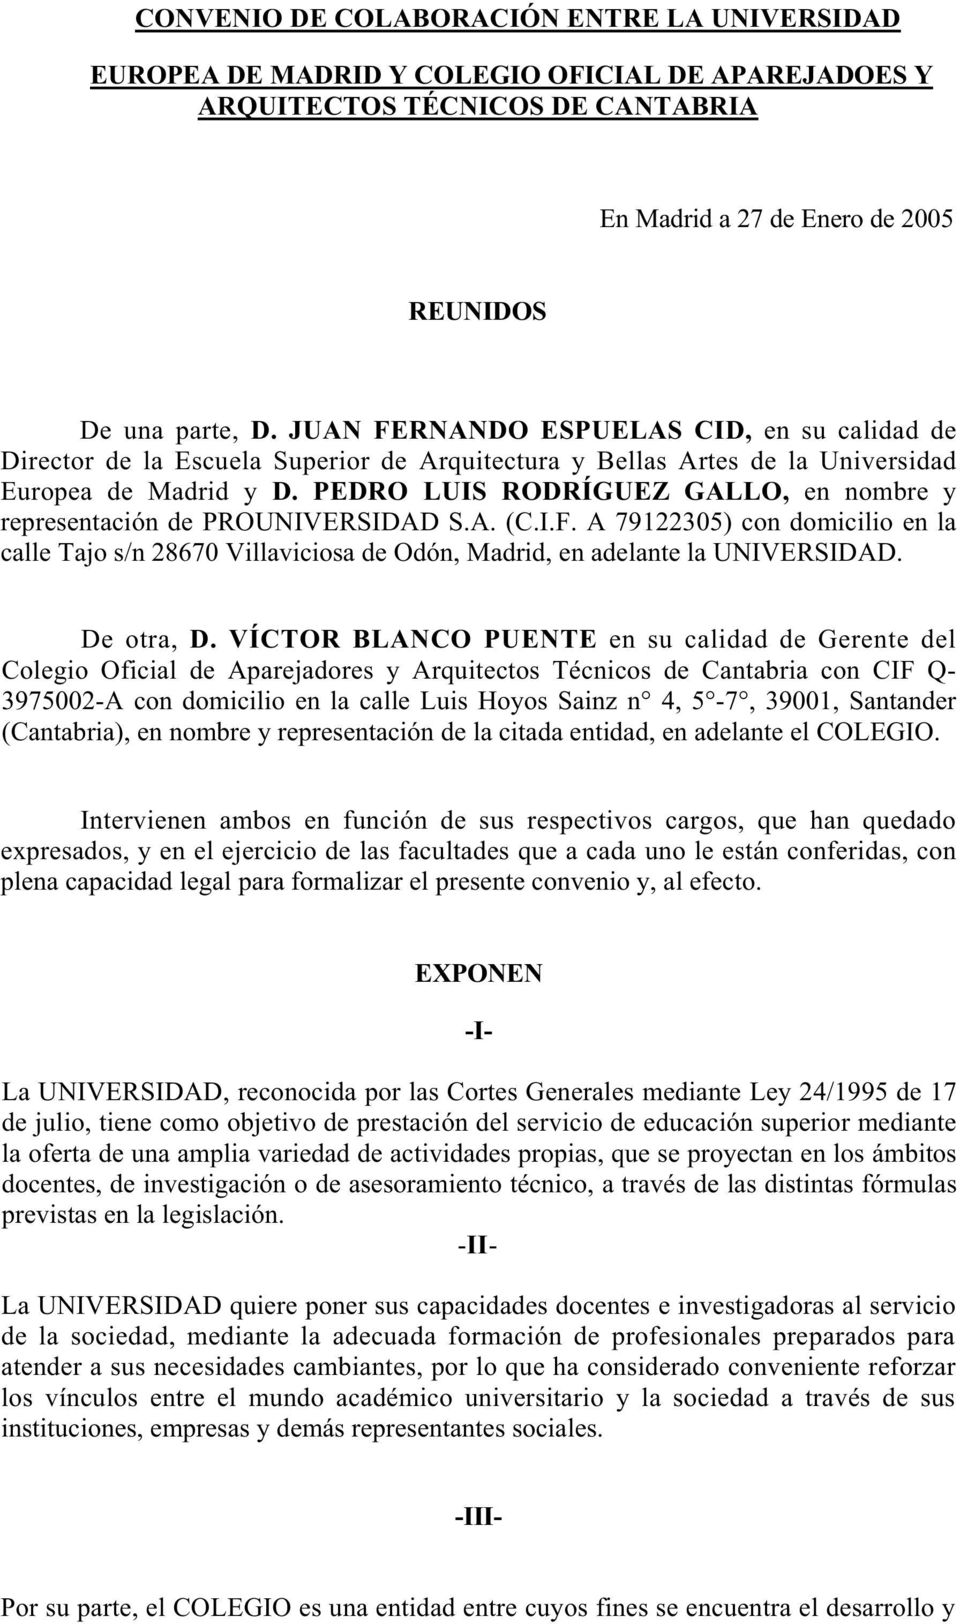 PEDRO LUIS RODRÍGUEZ GALLO, en nombre y representación de PROUNIVERSIDAD S.A. (C.I.F. A 79122305) con domicilio en la calle Tajo s/n 28670 Villaviciosa de Odón, Madrid, en adelante la UNIVERSIDAD.